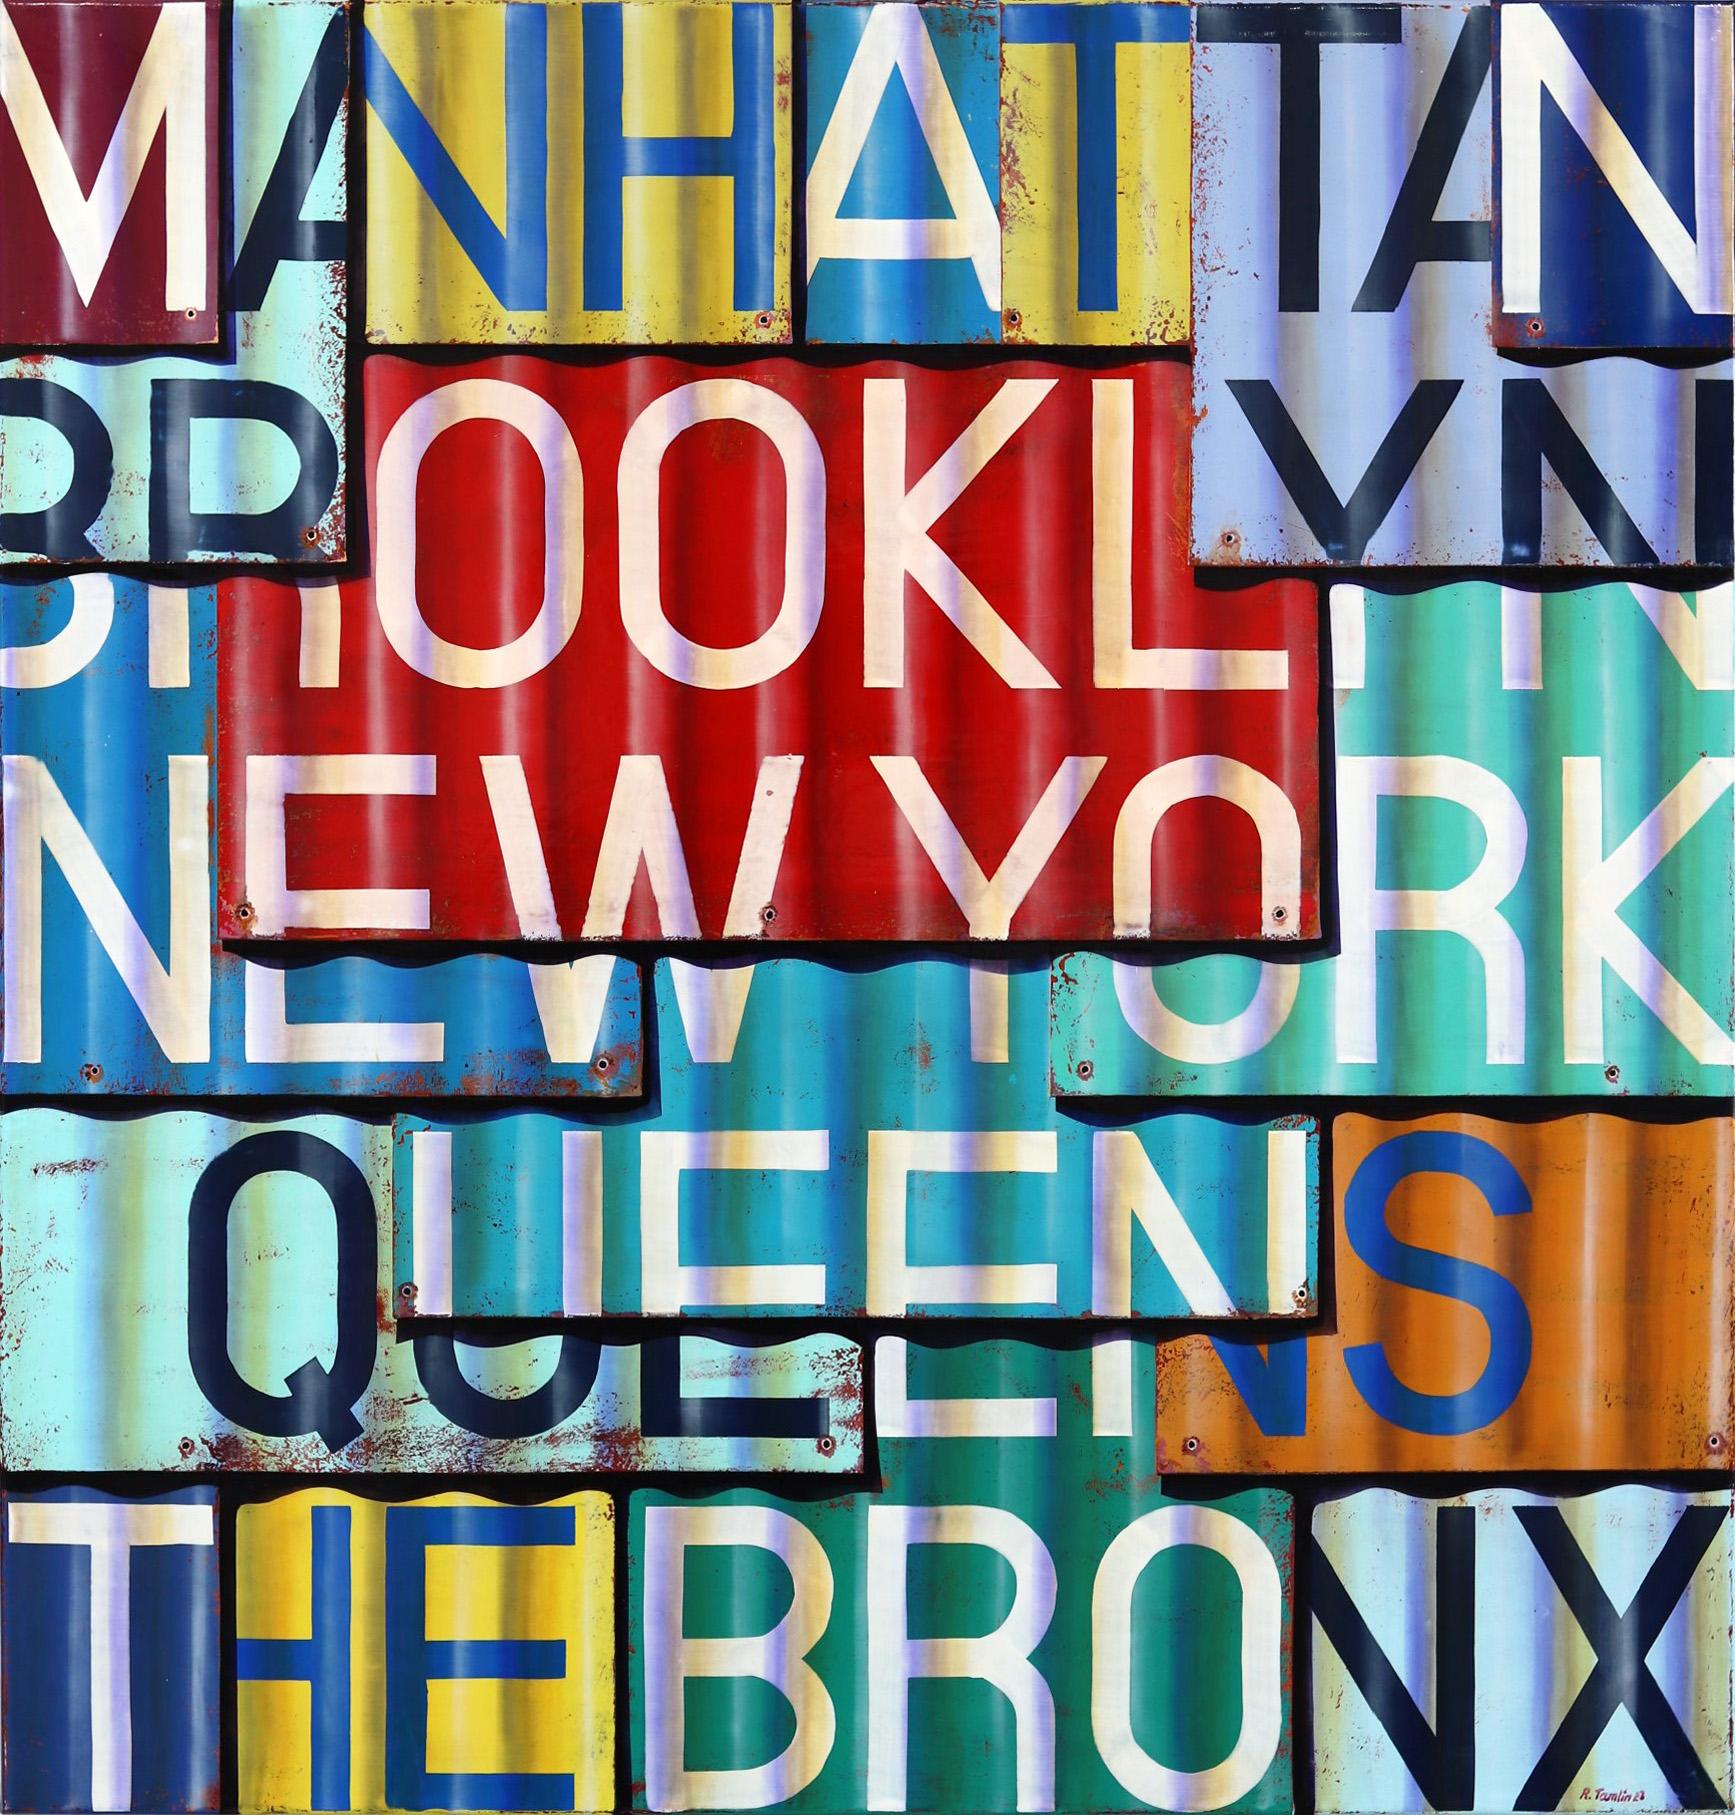 New York - Fotorealistisches Schildergemälde mit Öl und Emaille auf Leinwand